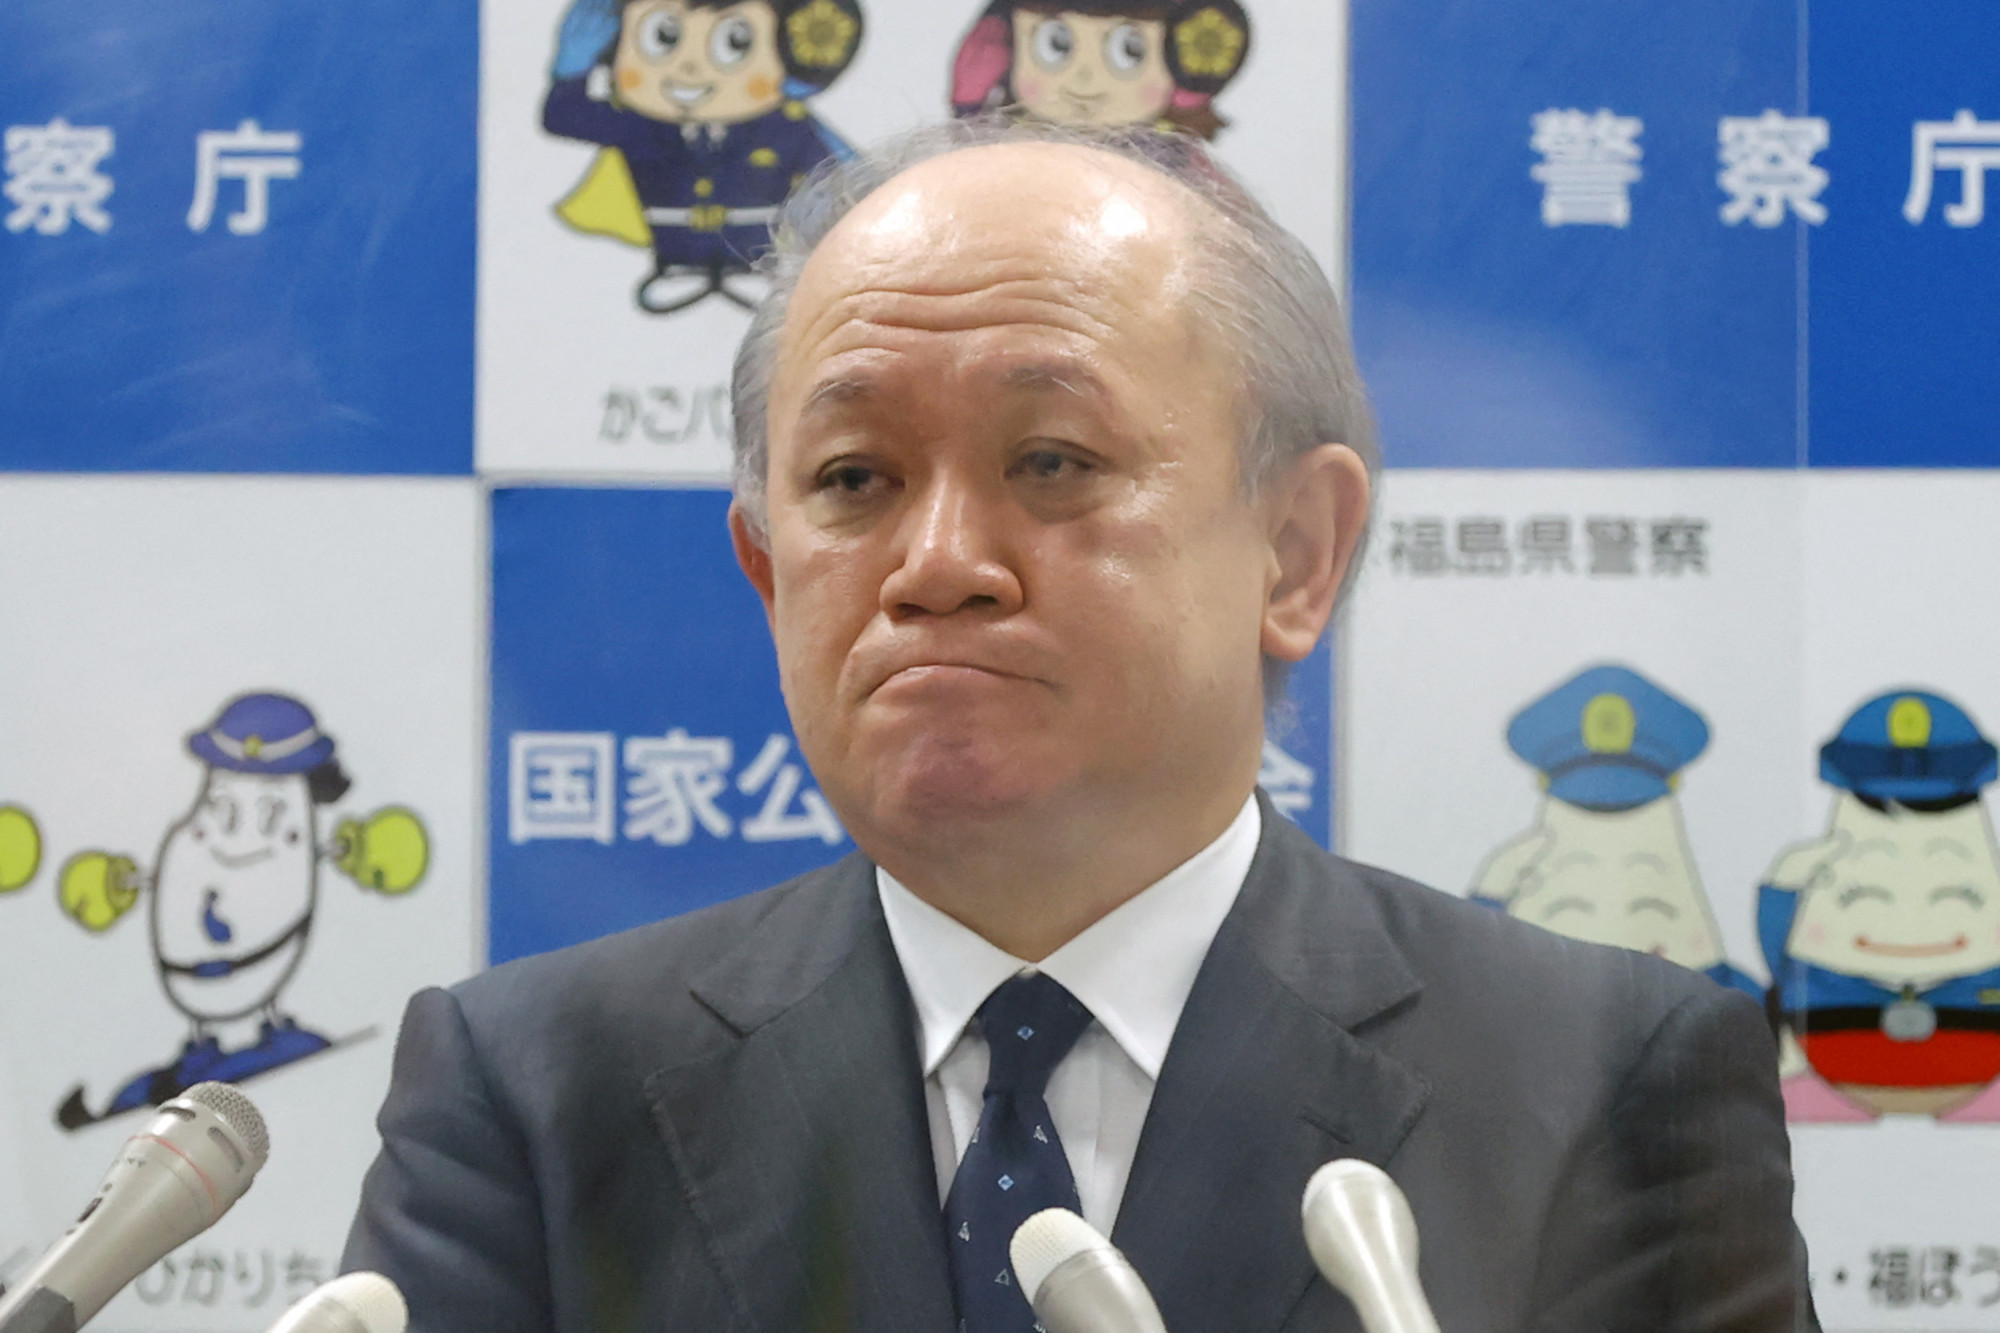 Lemondott a japán rendőrség vezetője az Abe Sindzó elleni merénylet miatt